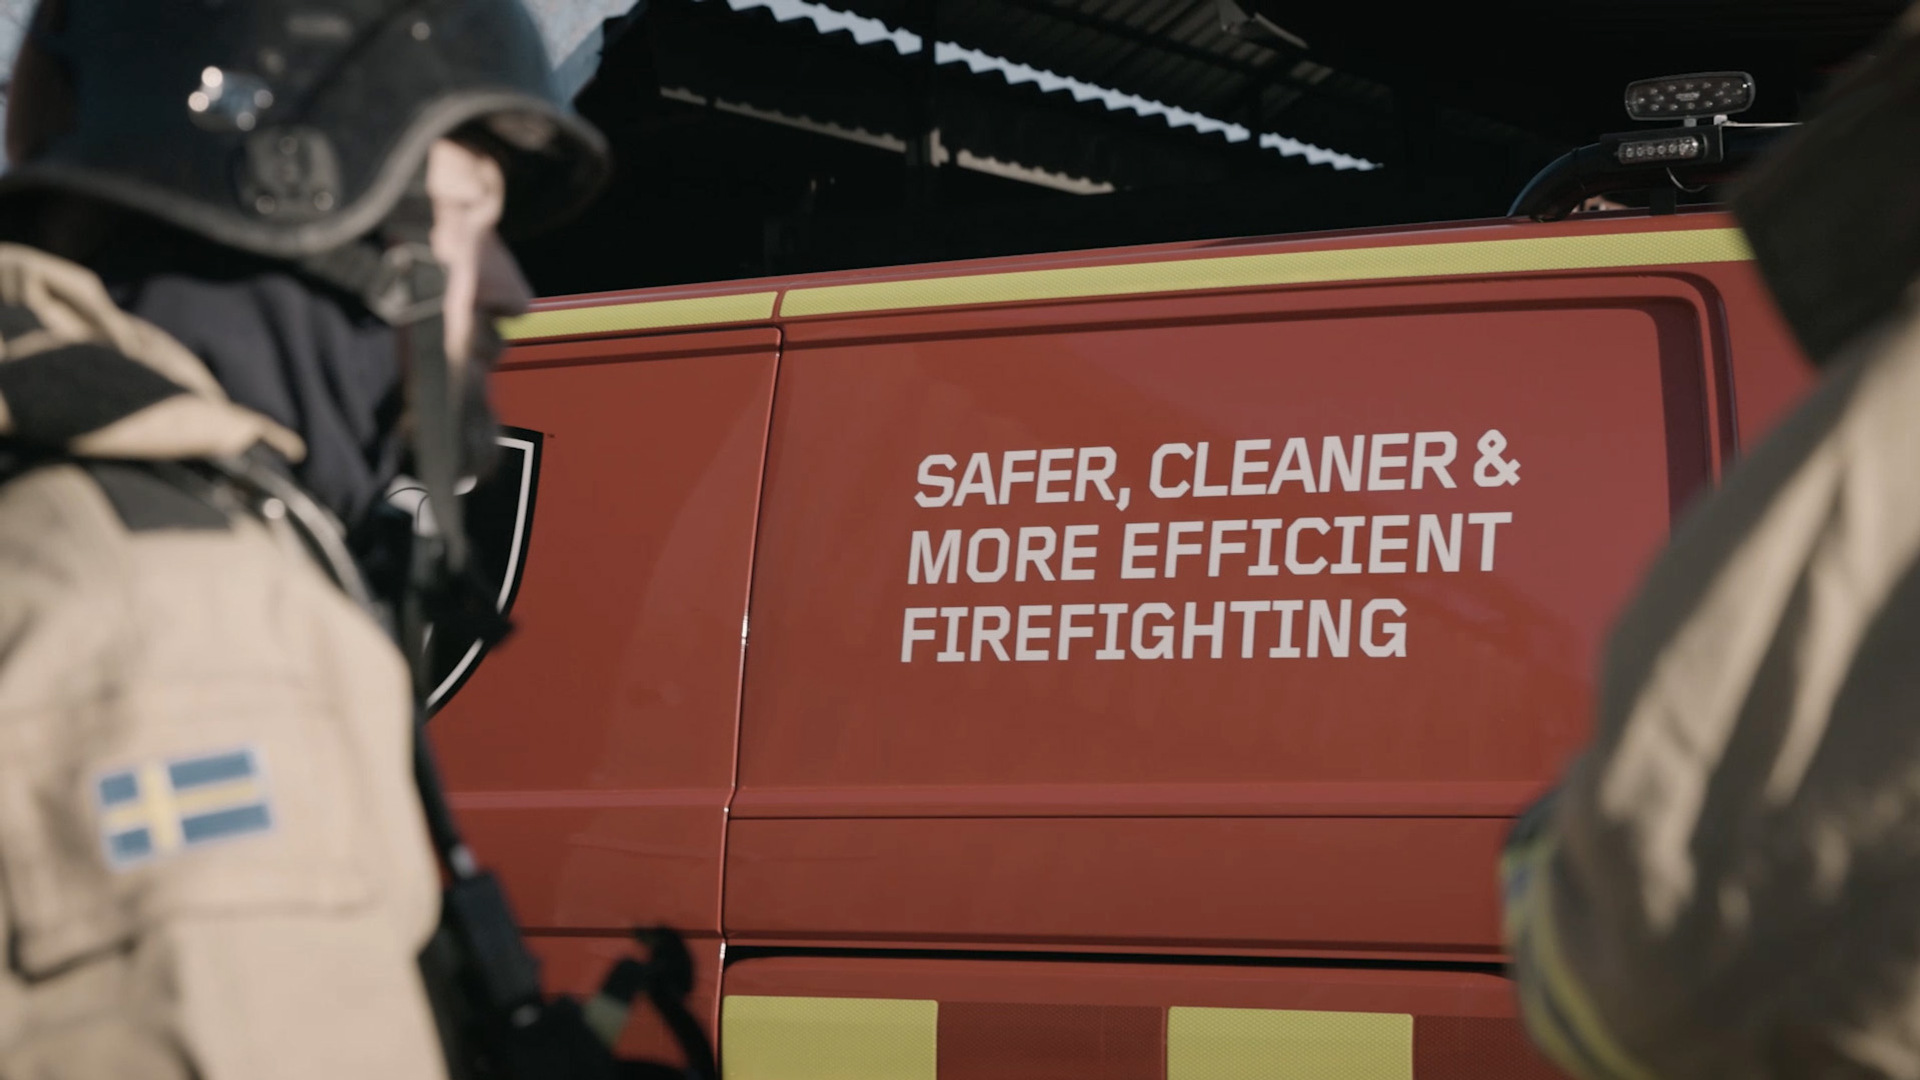 Safer, Cleaner & More Efficient